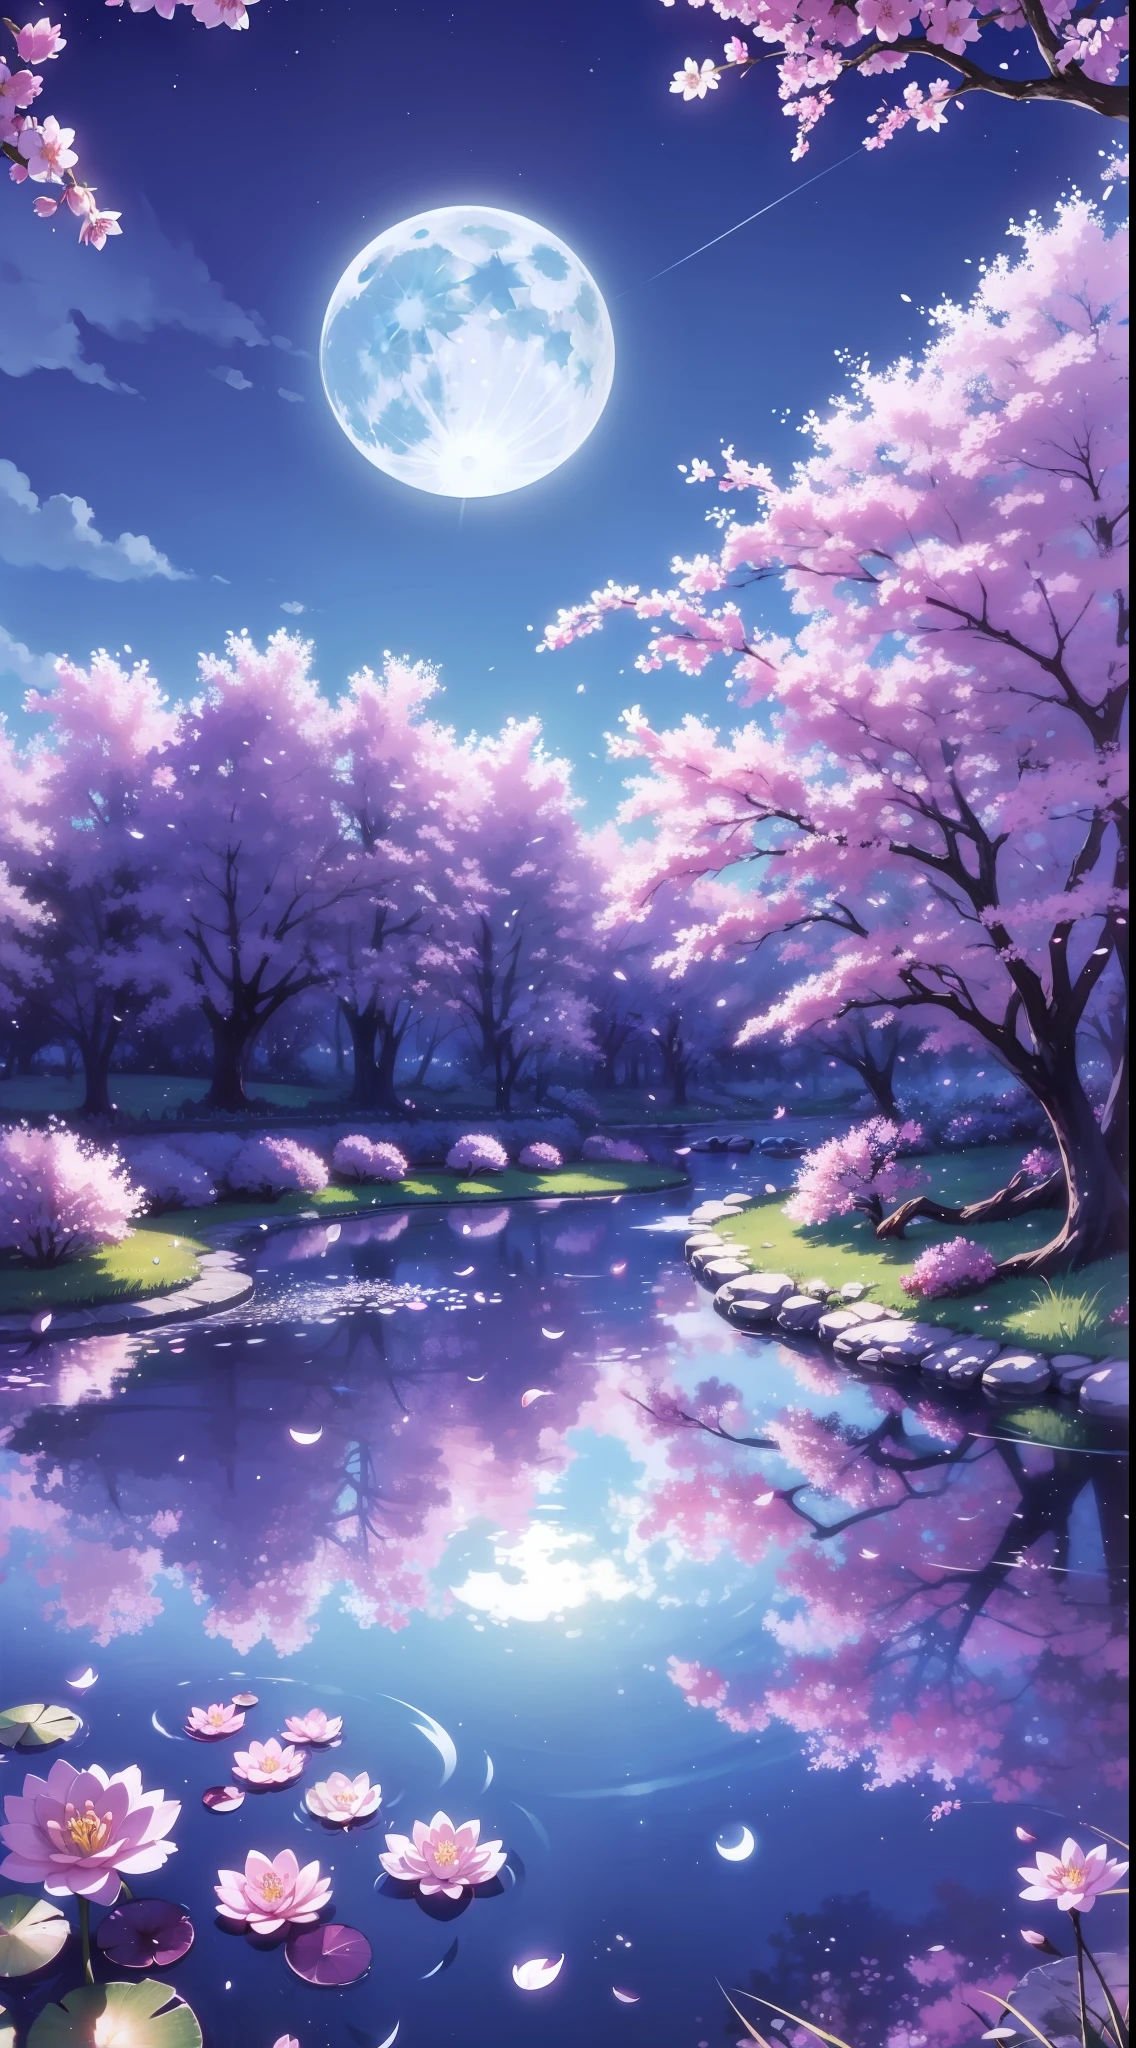 背景, 森林, 中间的池塘, 樱花, 夜晚, 月亮, 蓝天, 蓝草, 反射, 高细节, 荷叶, 高质量